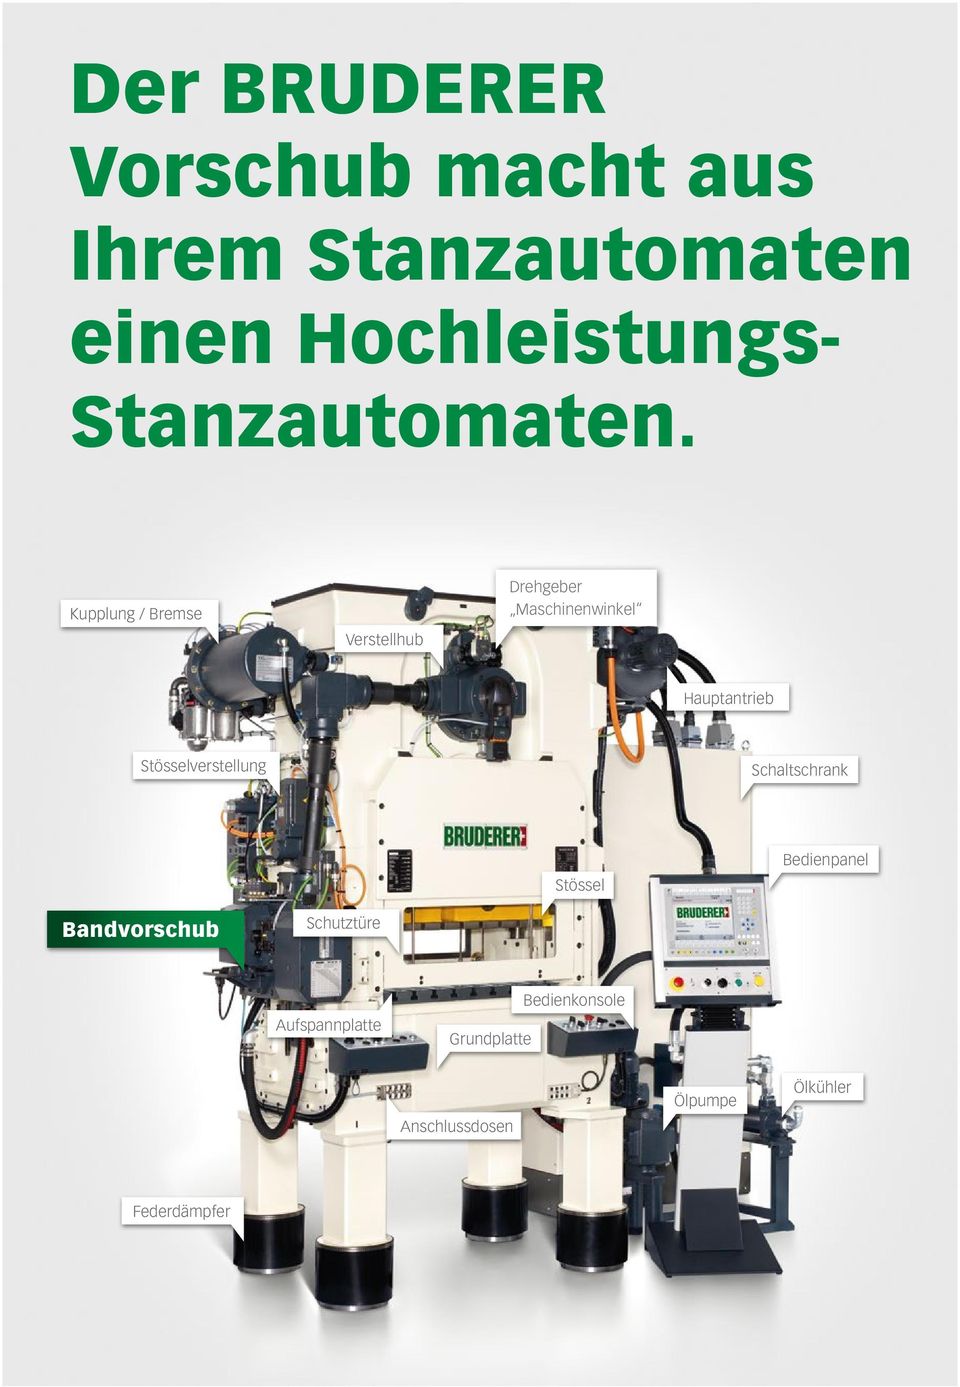 Kupplung / Bremse Verstellhub Drehgeber Maschinenwinkel Hauptantrieb